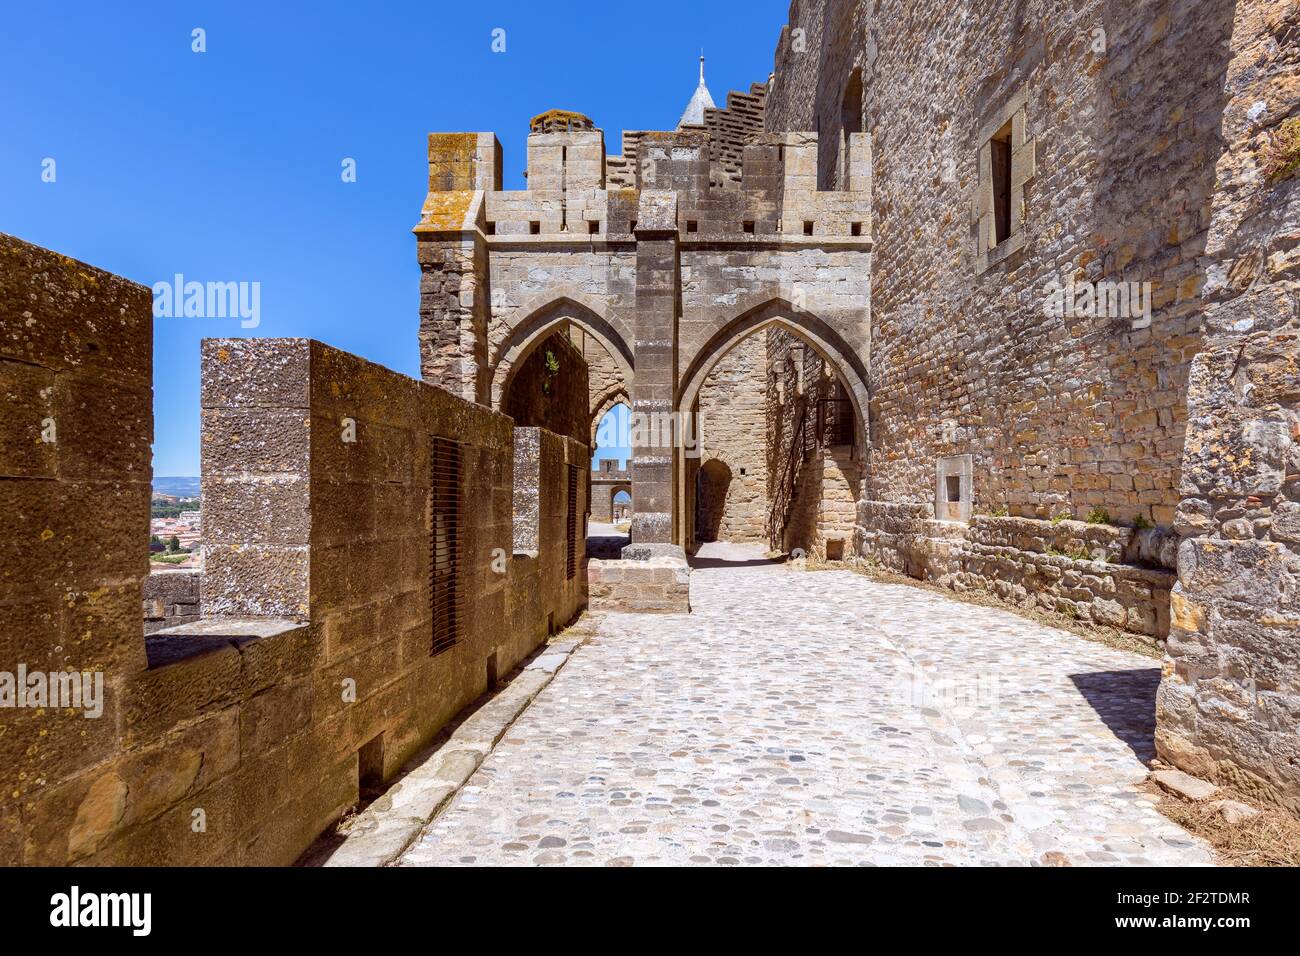 Arcos fortificados que conectan las murallas del castillo en la ciudad de Carcasona Foto de stock